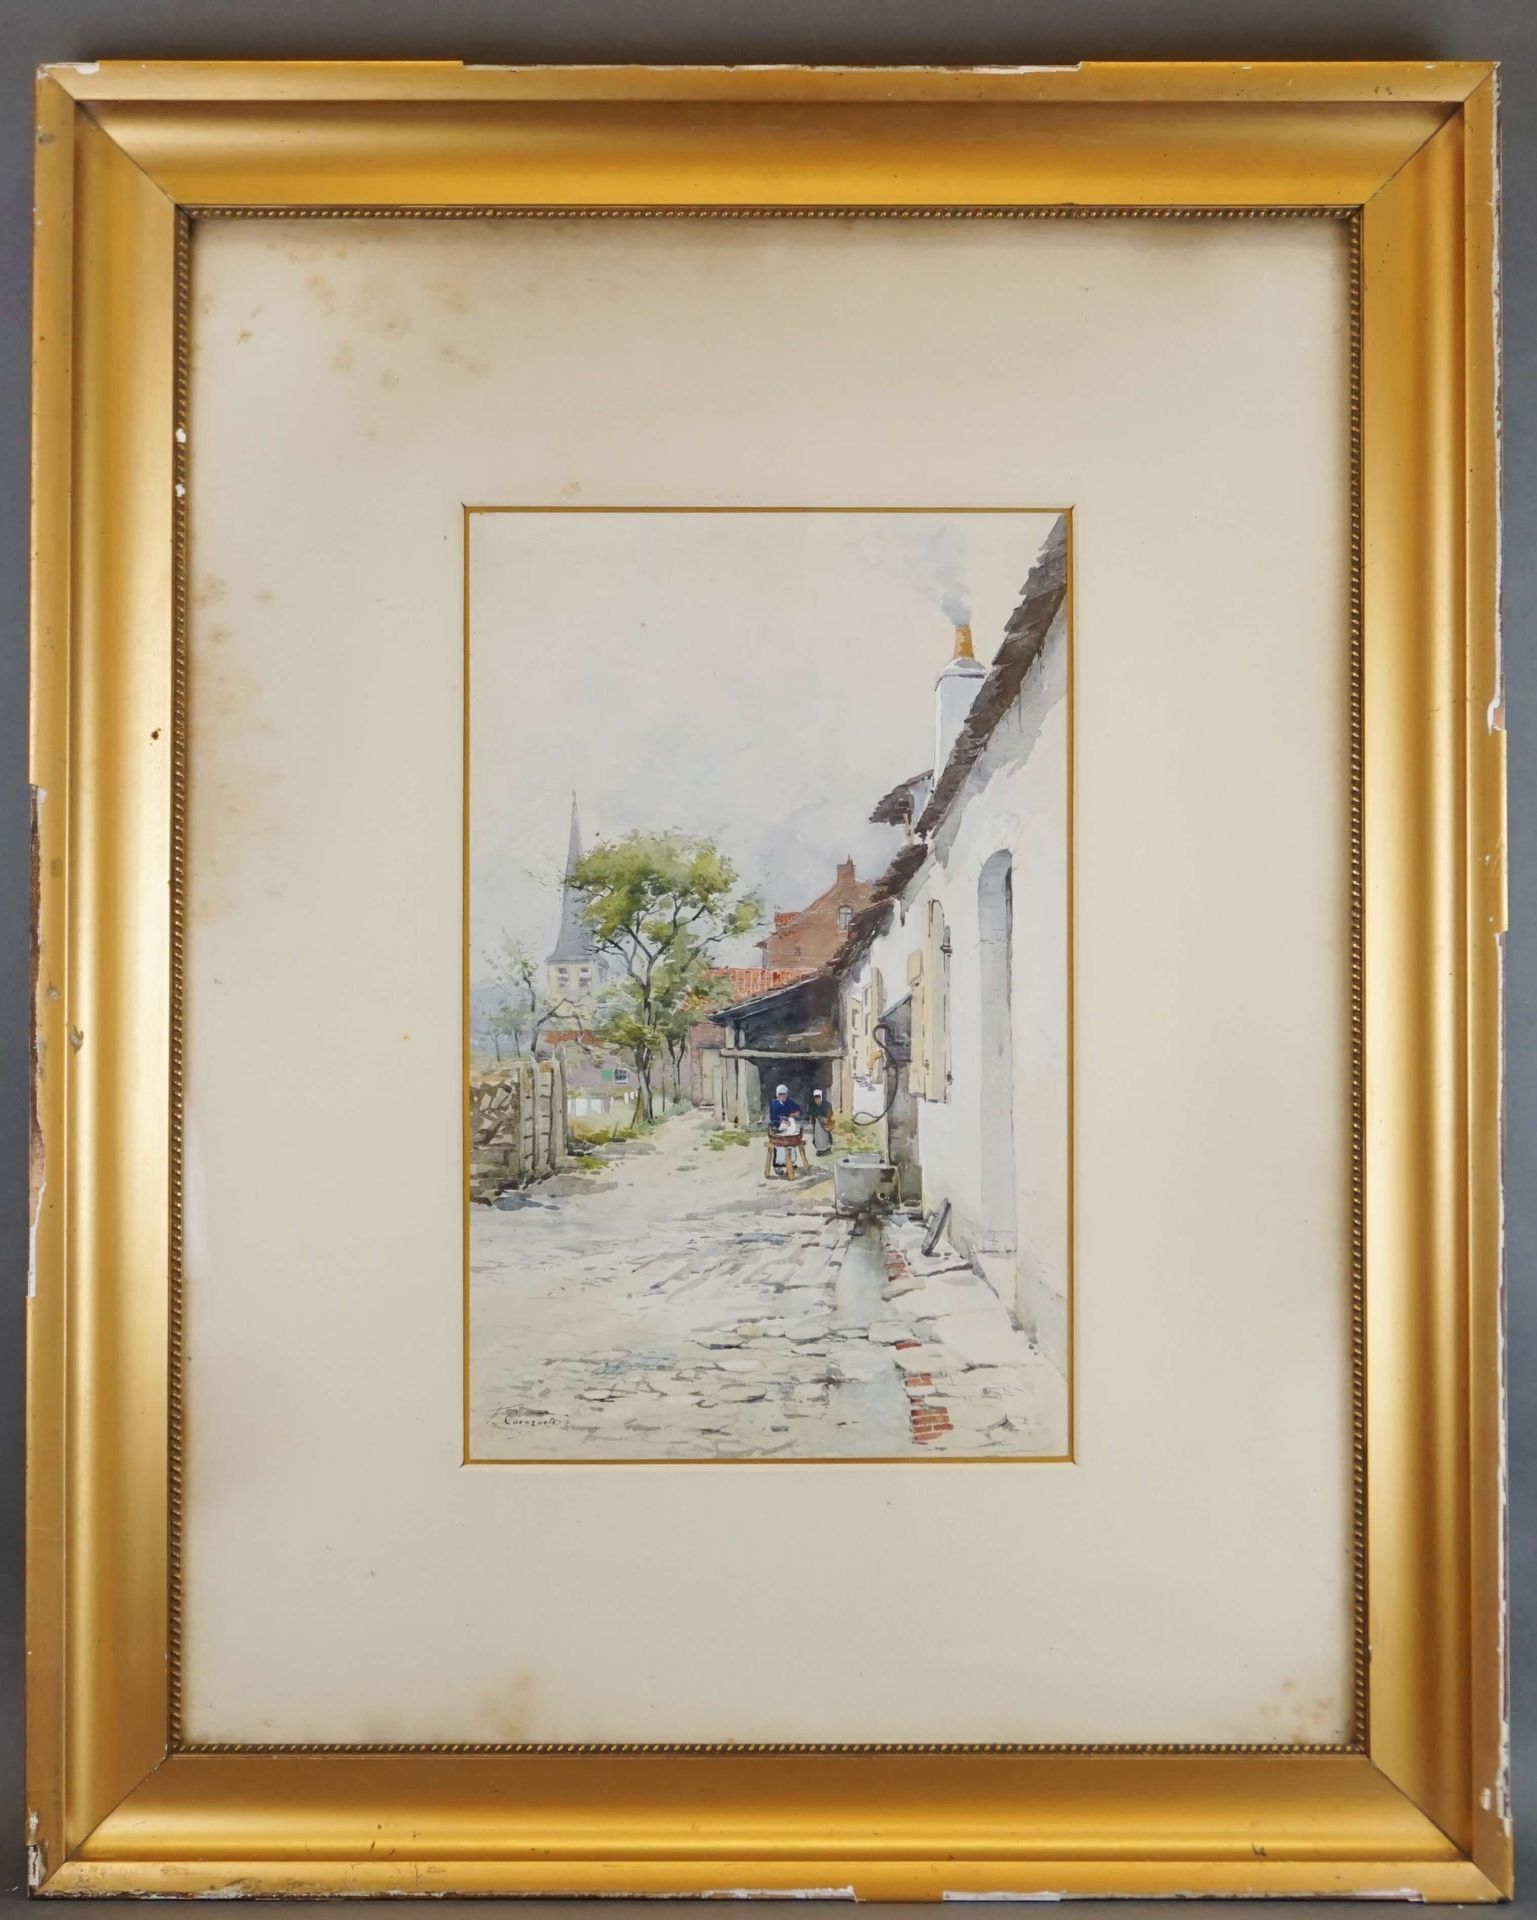 COENRAETS Ferdinand (1860-1939) 签名为F.Coenraets的水彩画《繁忙村庄的景色》。44x28厘米